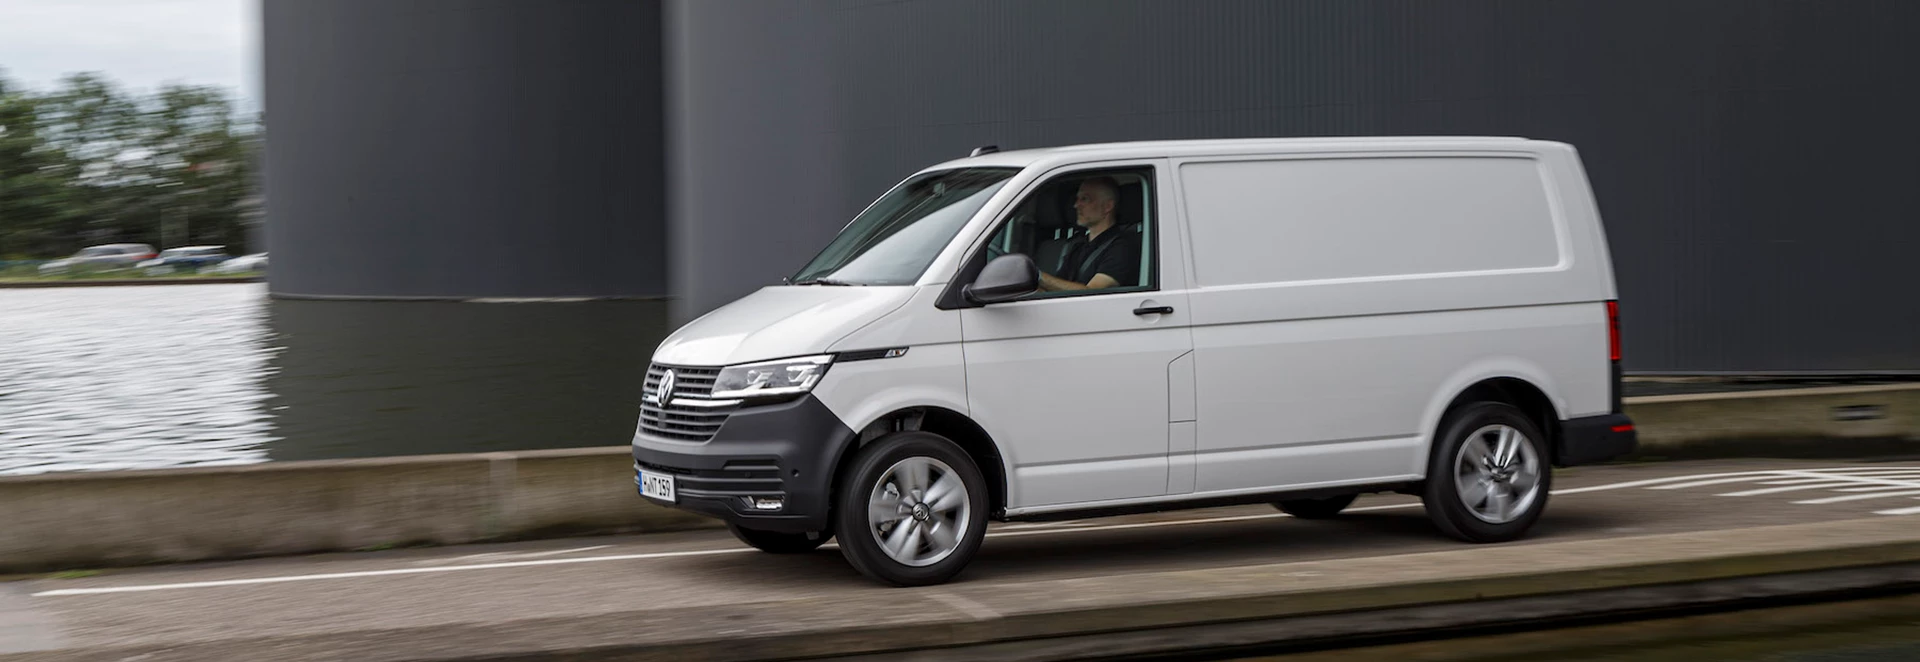 Volkswagen Transporter 2019 review